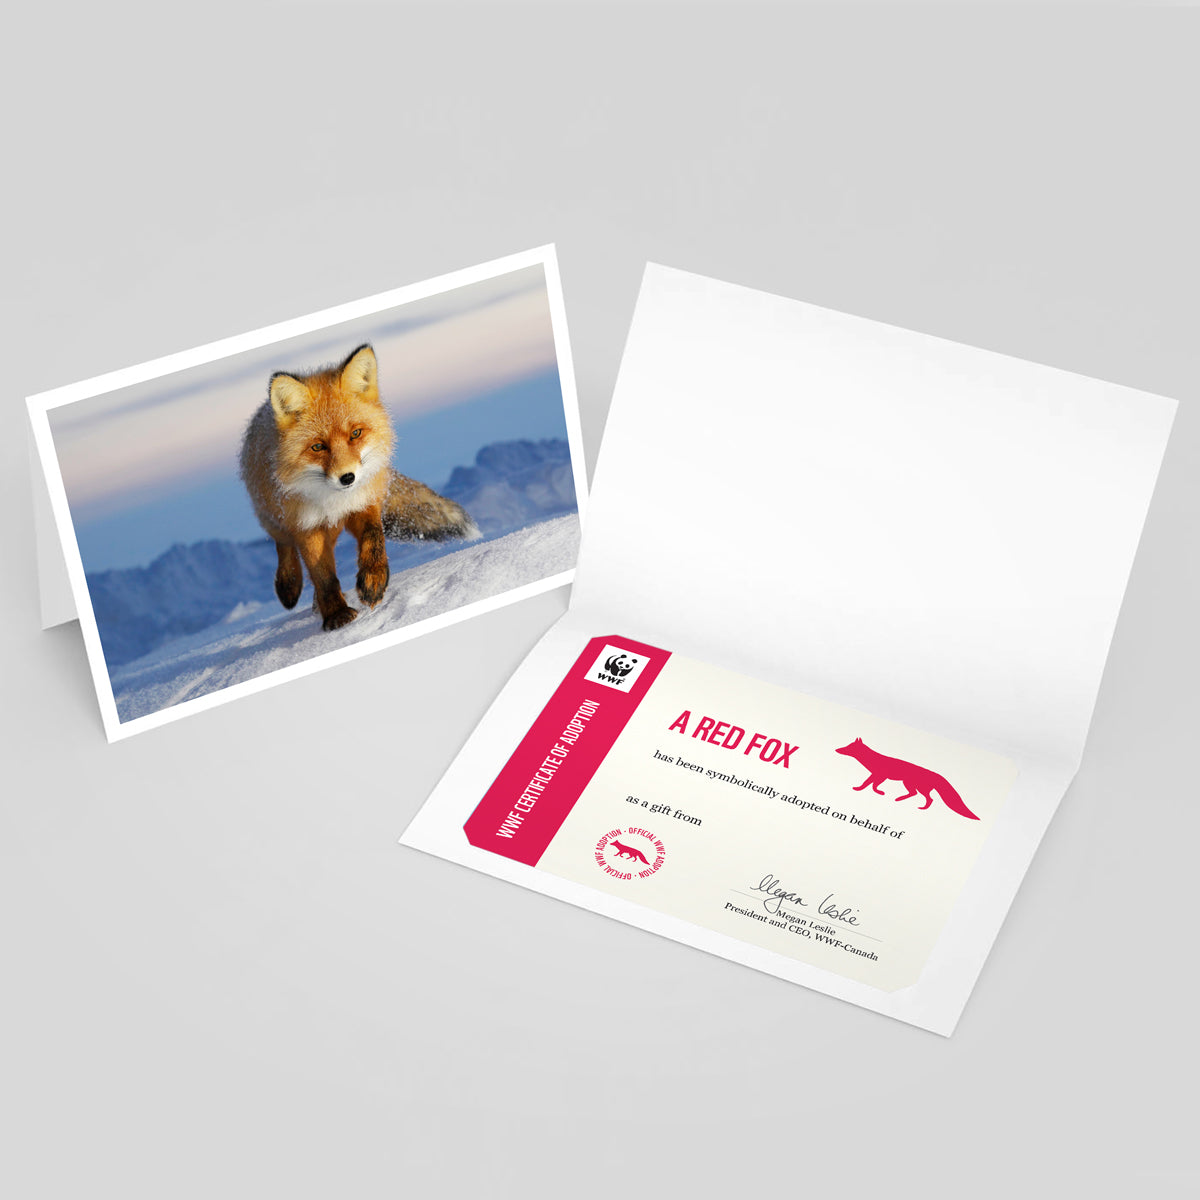 Red fox card - WWF-Canada